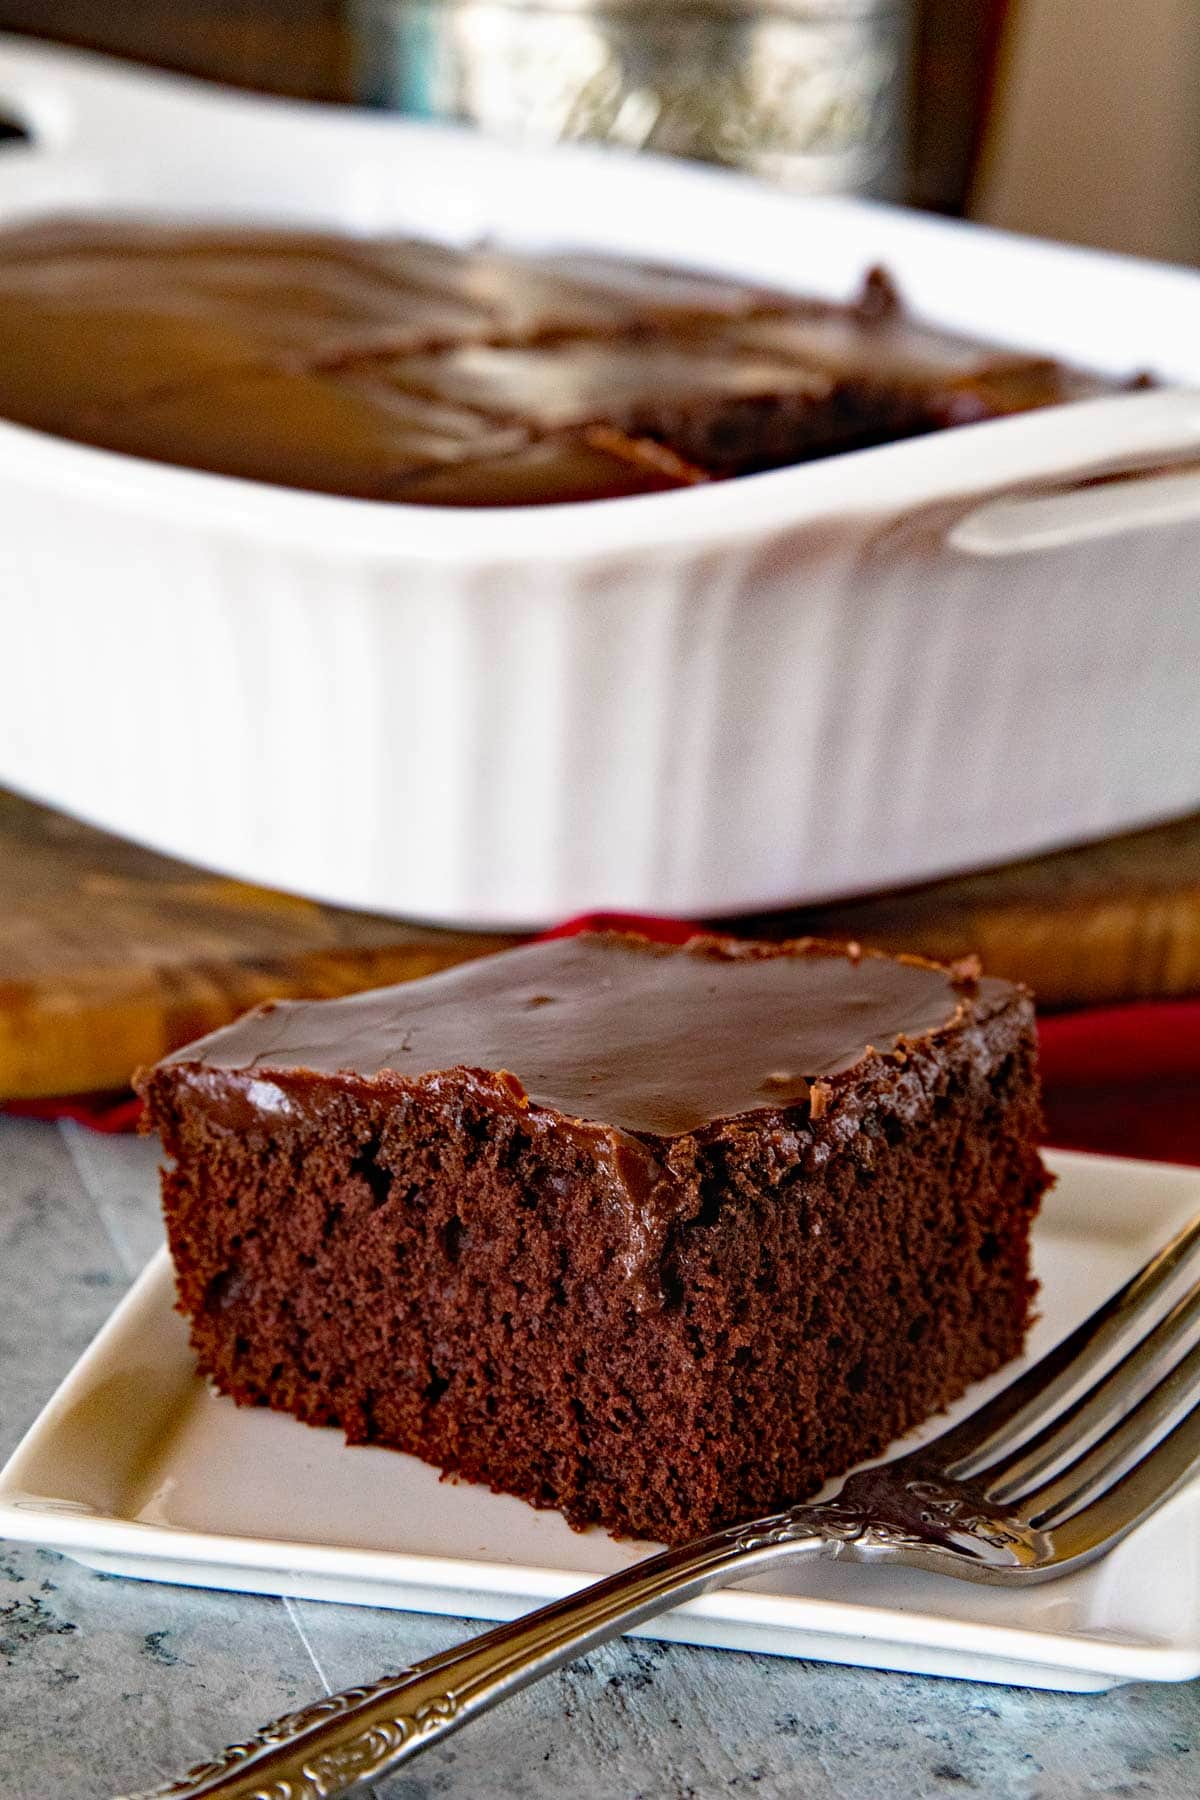 Easy Homemade Chocolate Cake Recipe that anyone cake make!